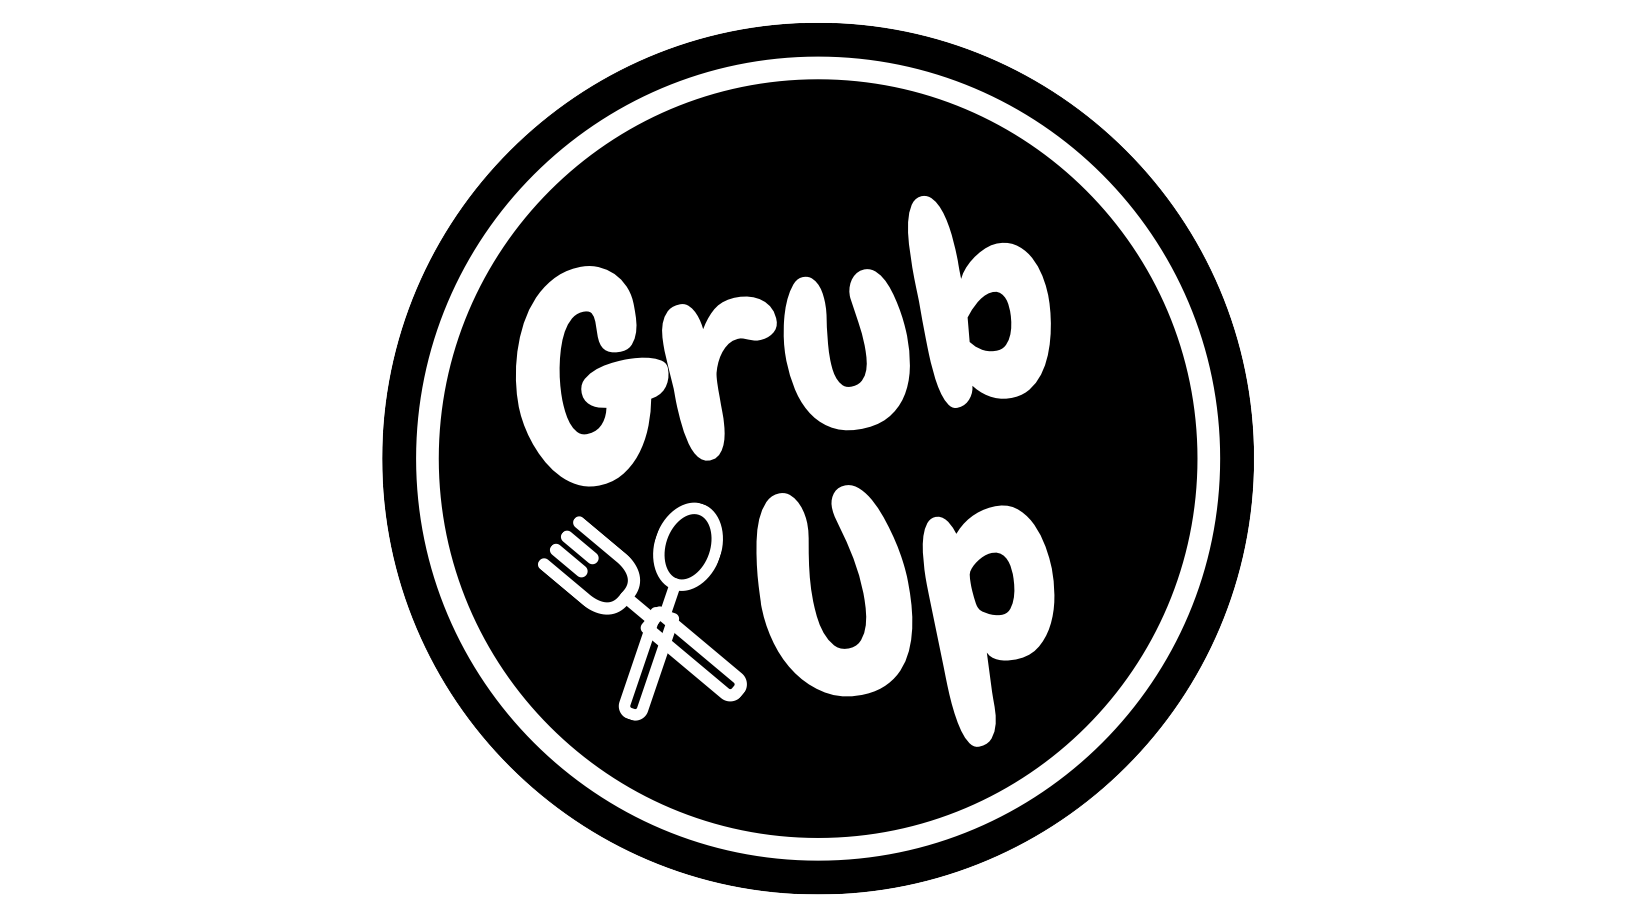 Grub up black circle logo